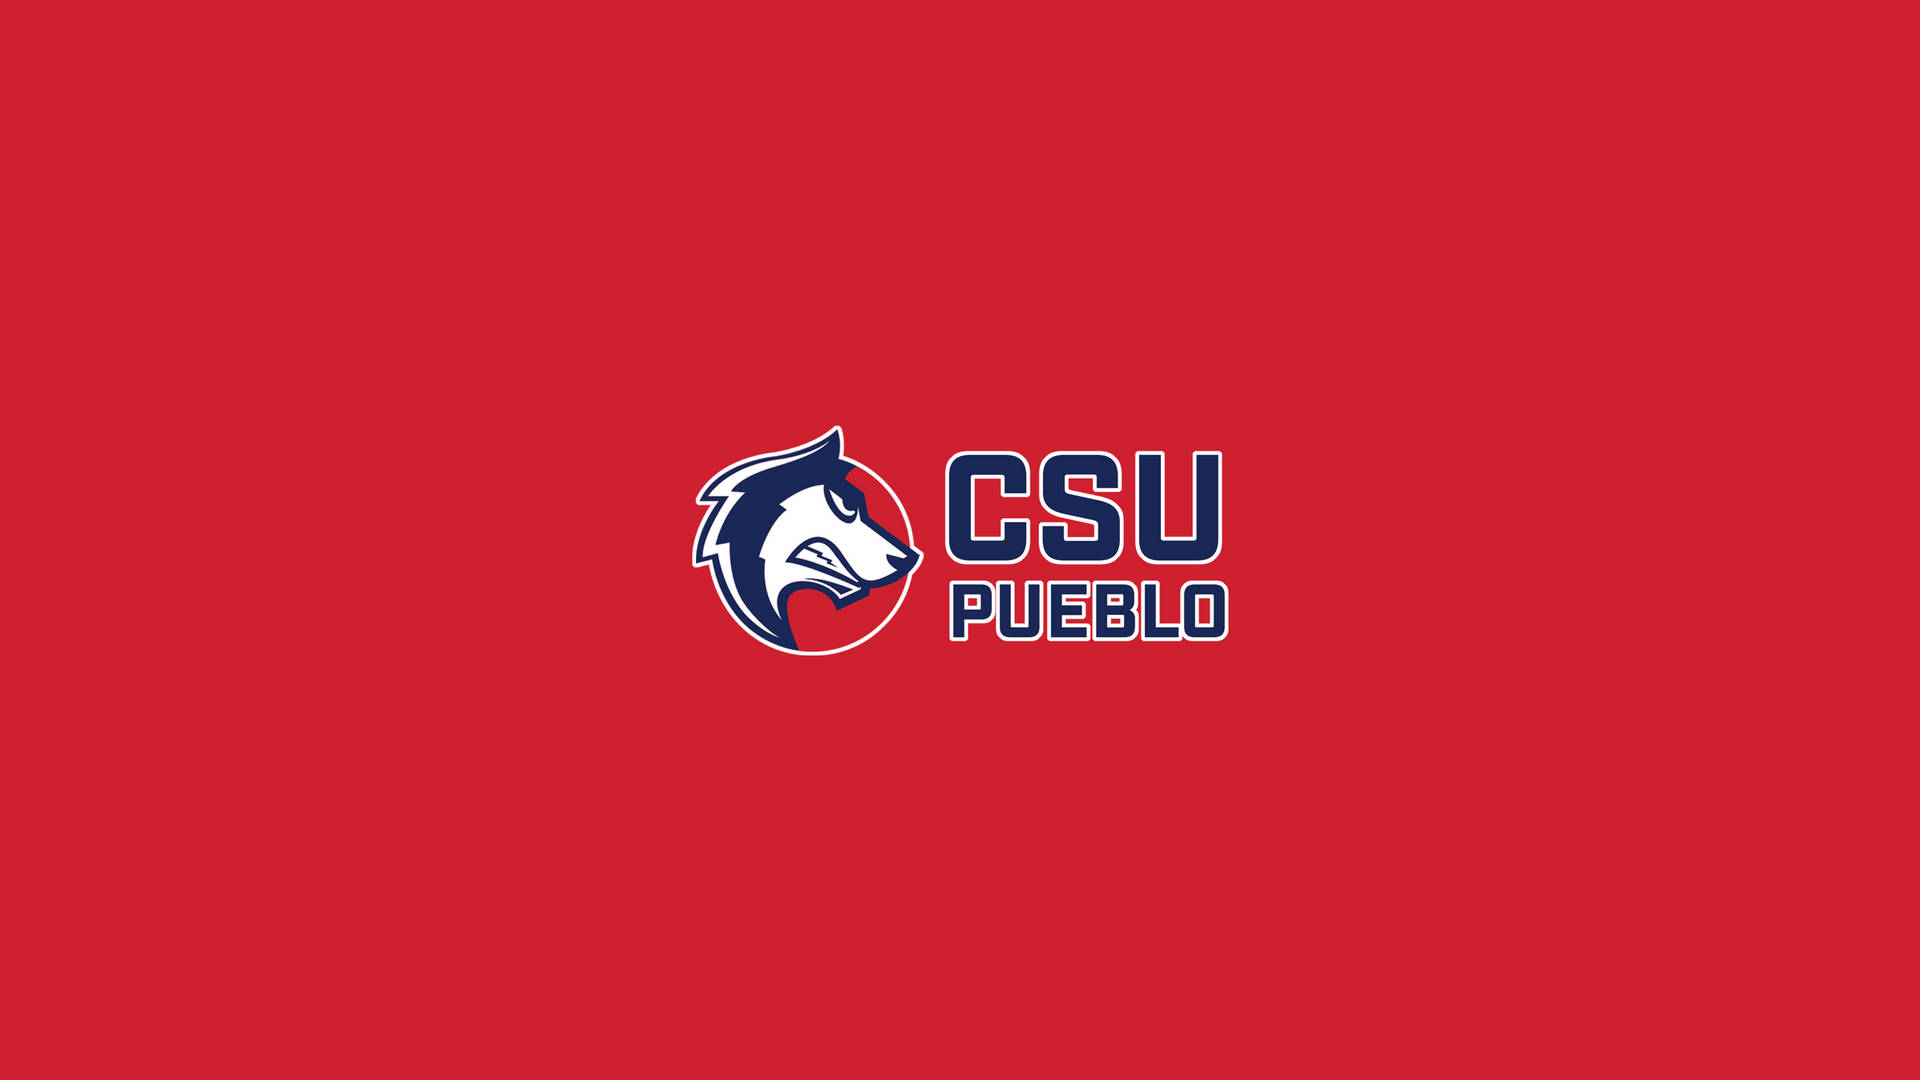 Colorado State University Csu Pueblo Wallpaper